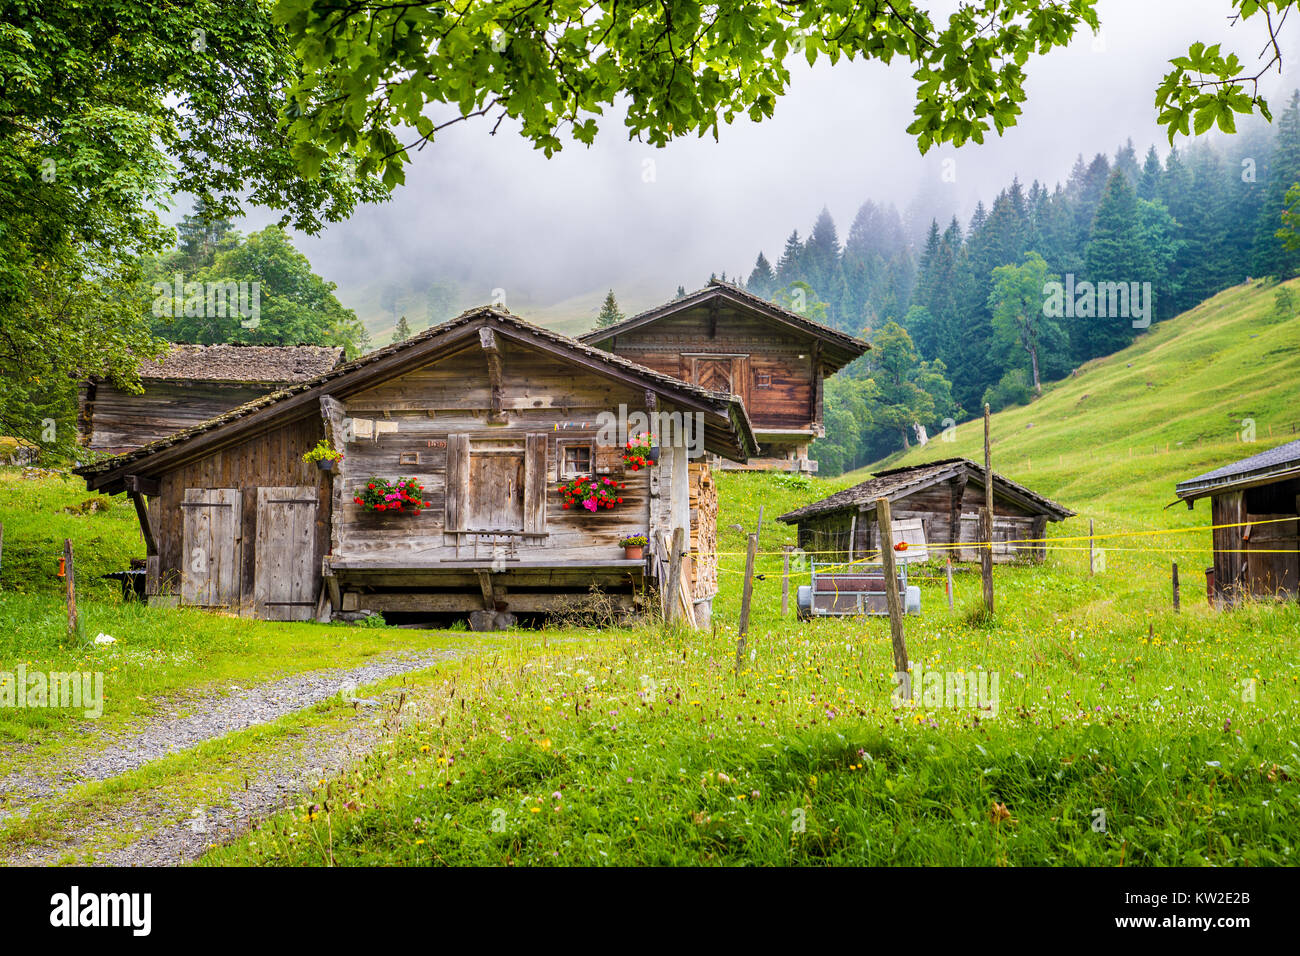 Malerische Aussicht auf traditionellen alten hölzernen Chalets in den Alpen mit frischen grünen Berg Wiesen, Bäume und mystische Nebel an einem bewölkten Tag im Sommer Stockfoto